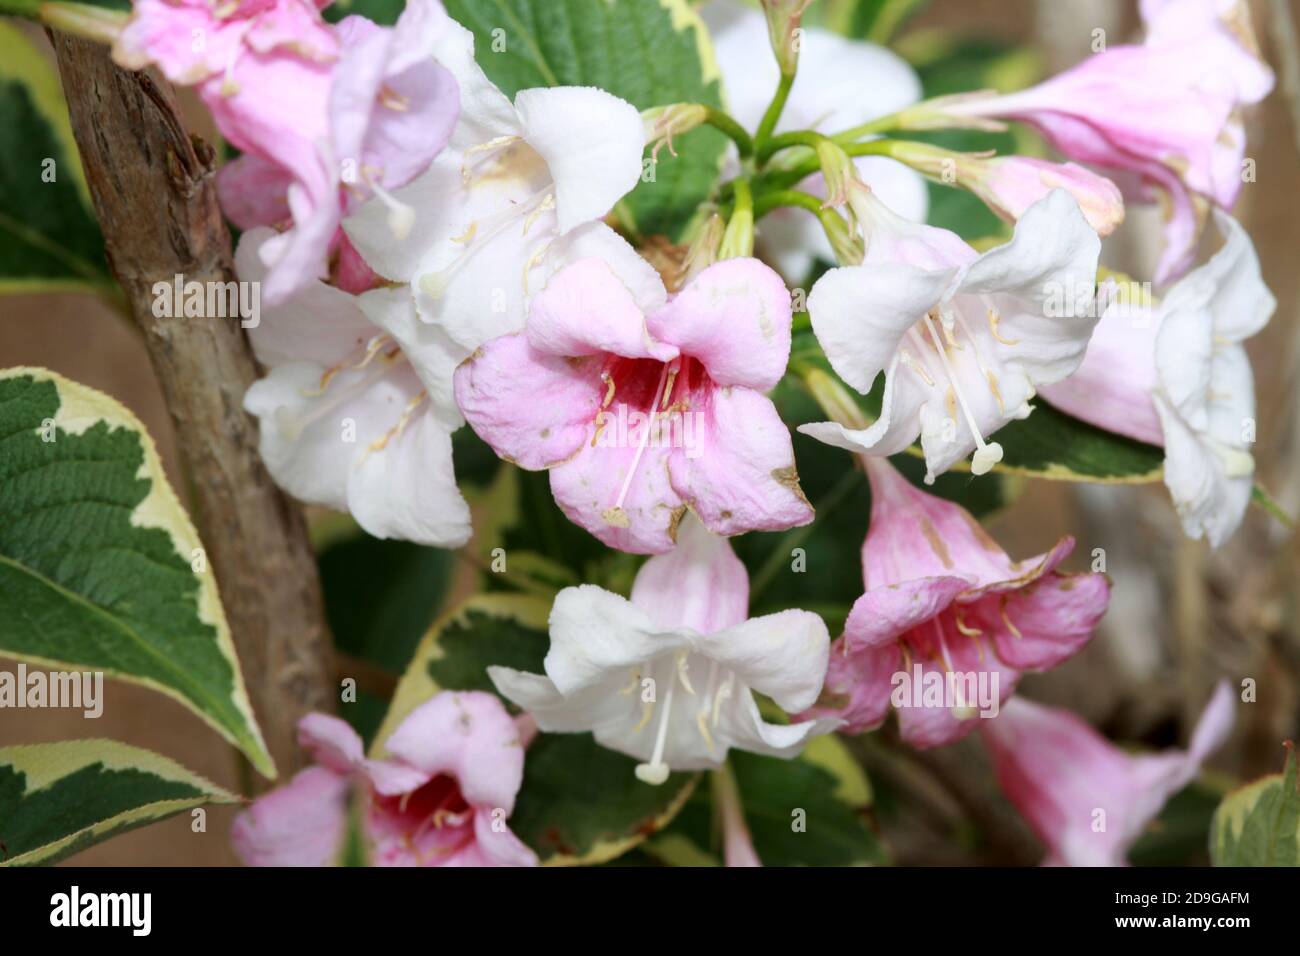 Blüten der lieblichen Weigelie Stock Photo